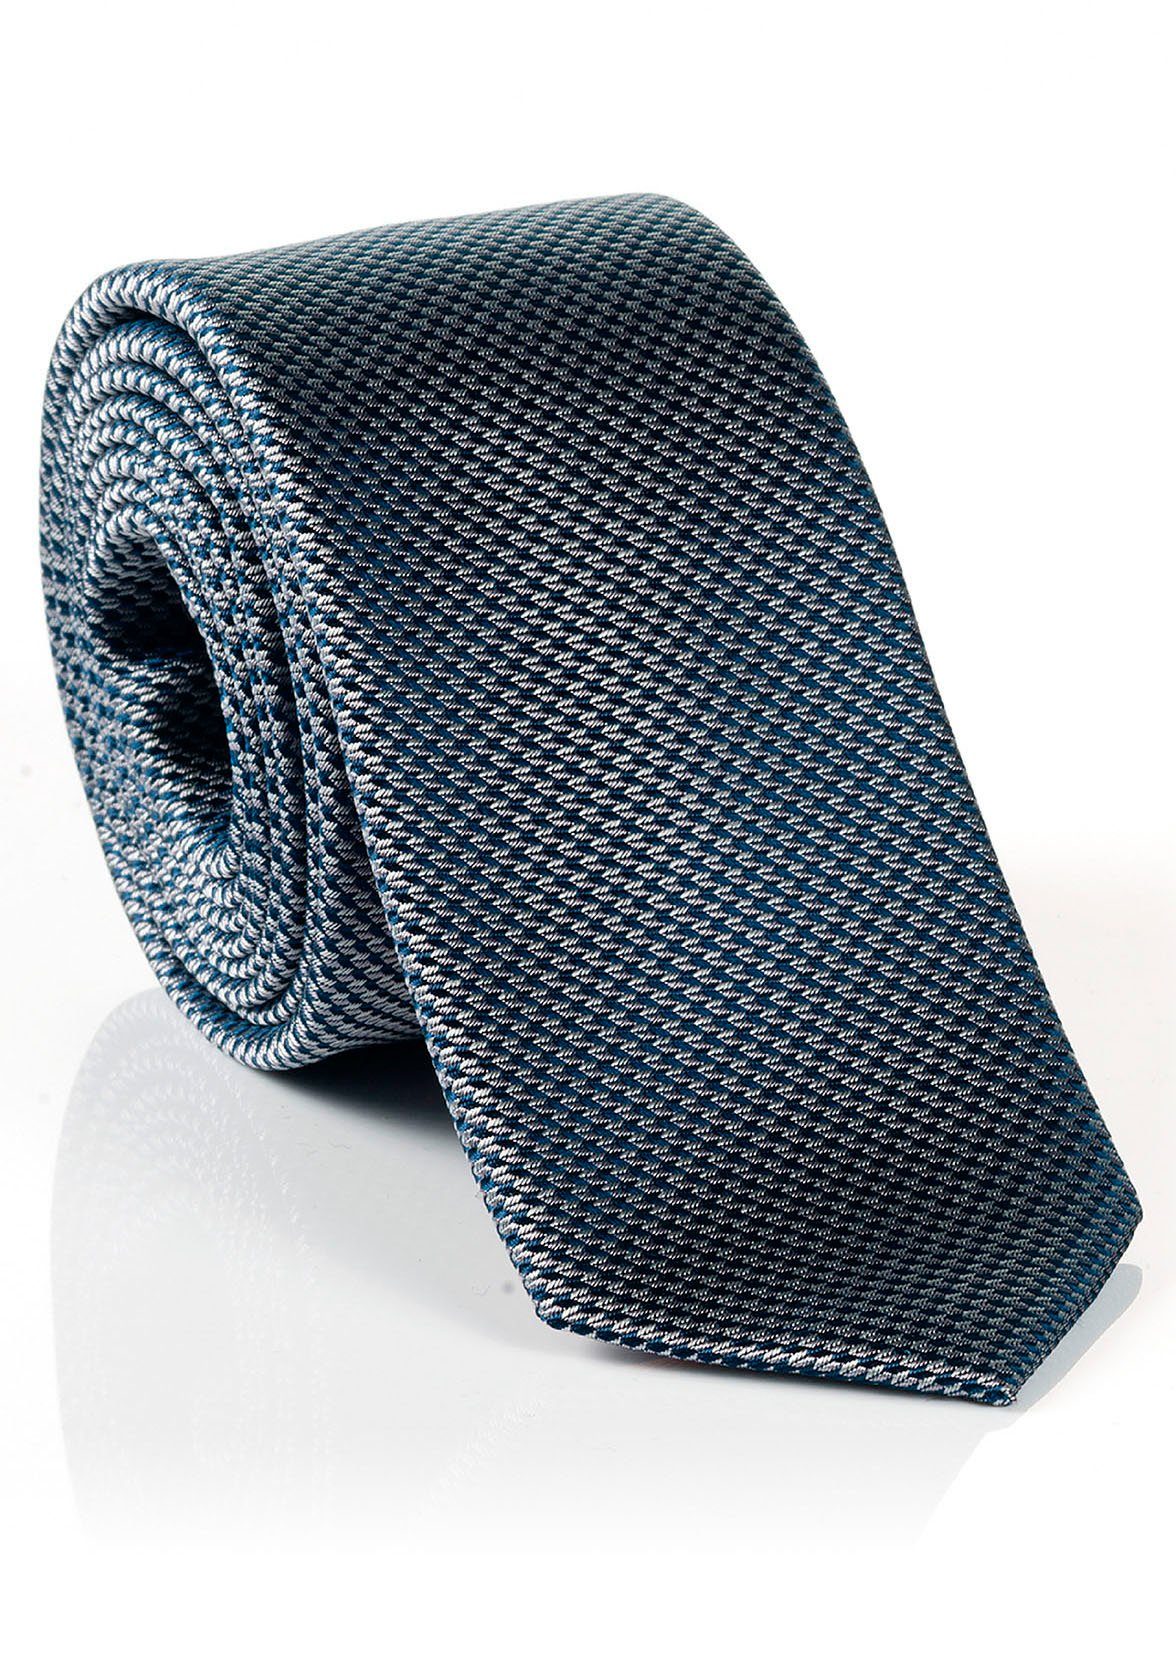 MONTI Krawatte Tragekomfort Seide, hohem verarbeitete LANDO Hochwertig Minimal-Muster, Reine Seidenkrawatte mit